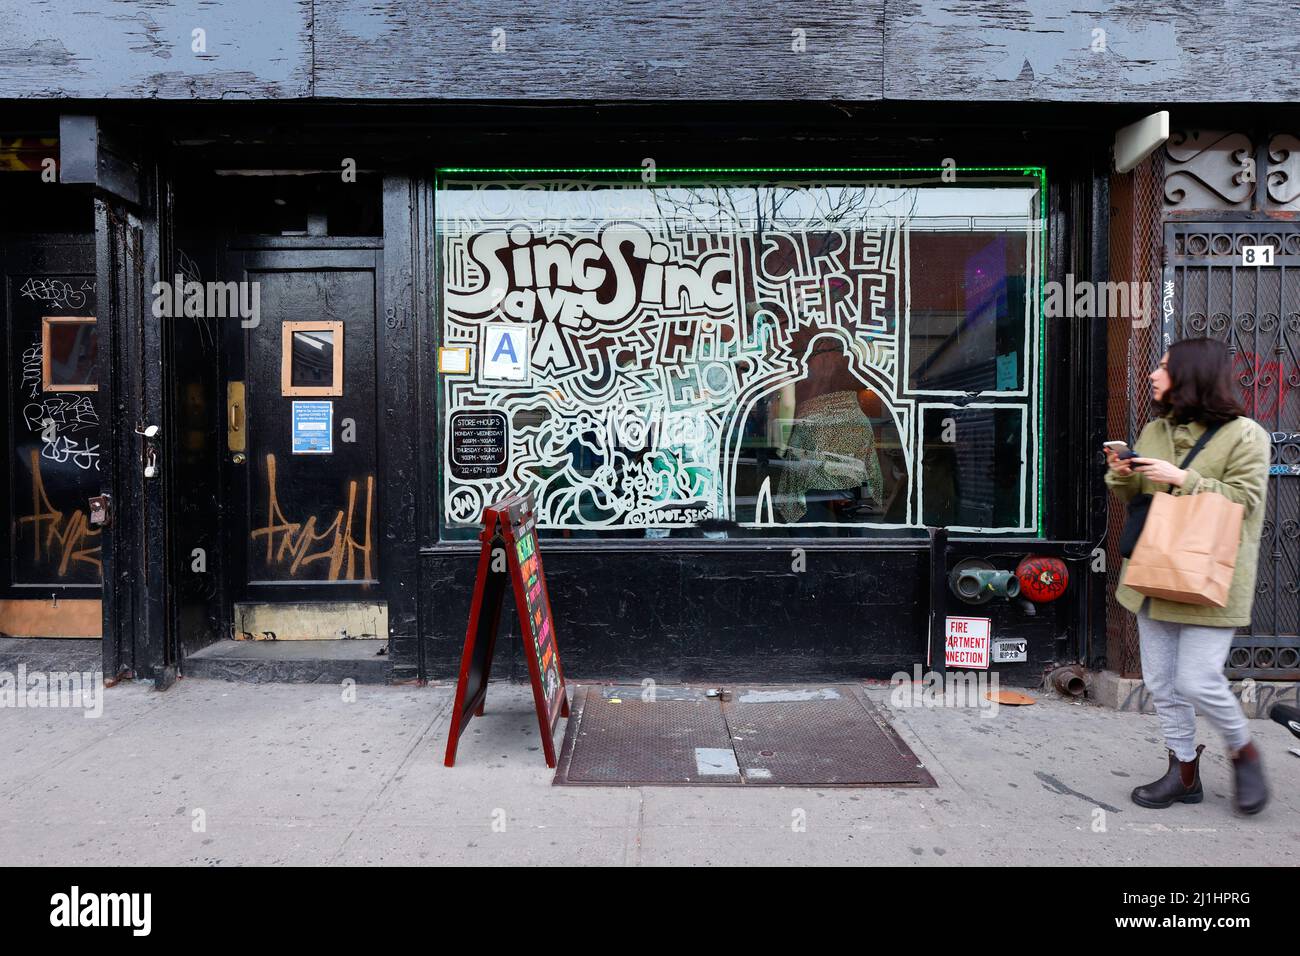 Sing Sing, 81 Avenue A, New York, NYC Foto von einer Karaoke-Bar im East Village von Manhattan. Stockfoto